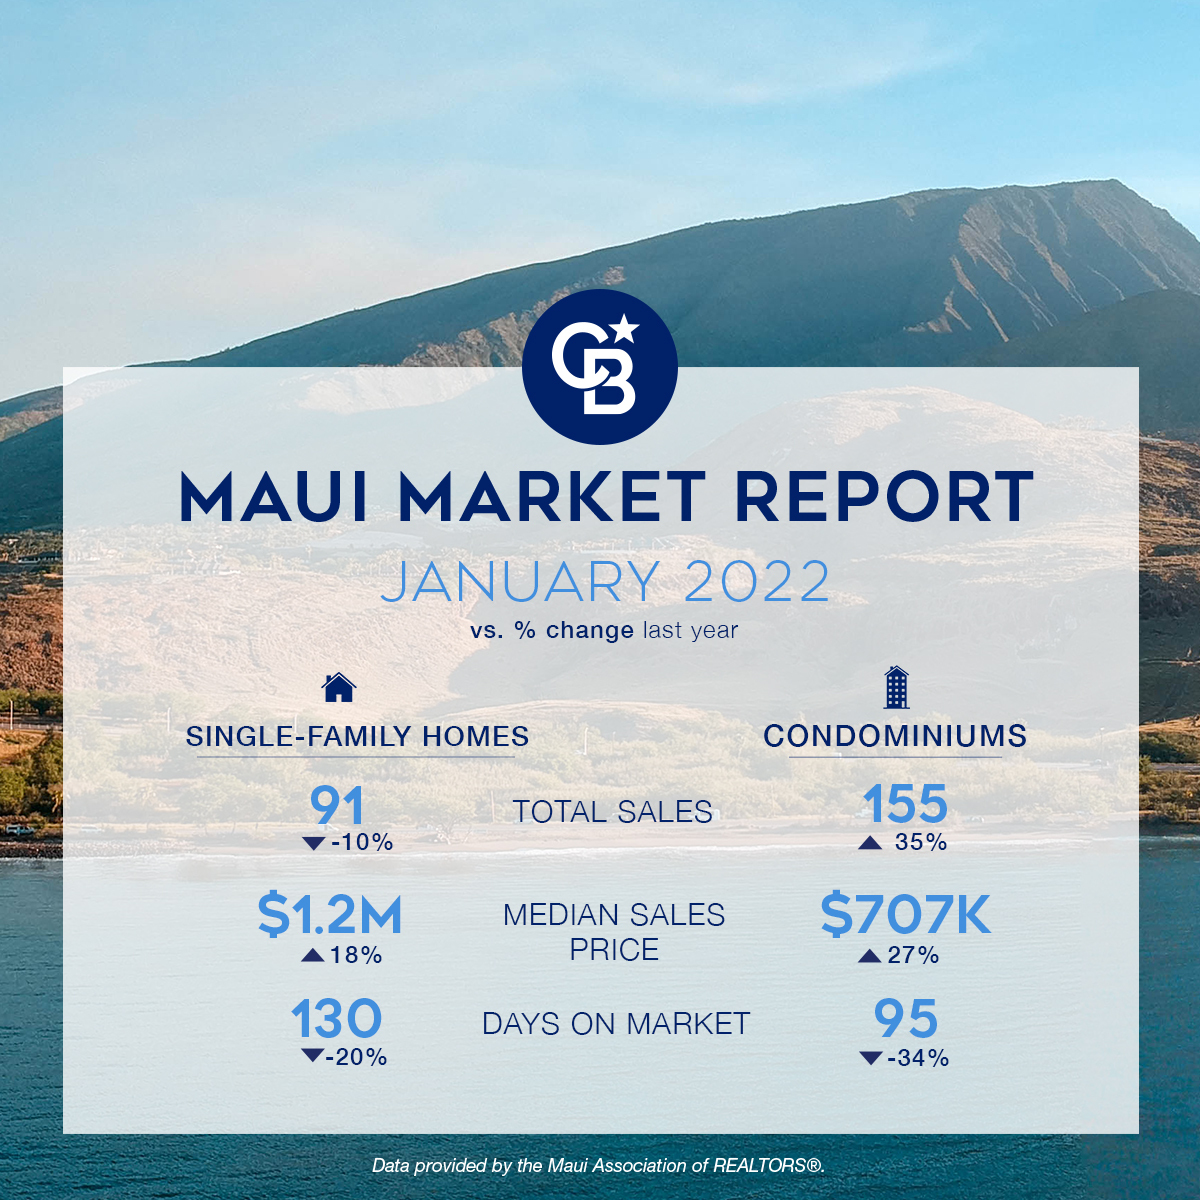 Maui Market Report Socials JAN 2022 (1)